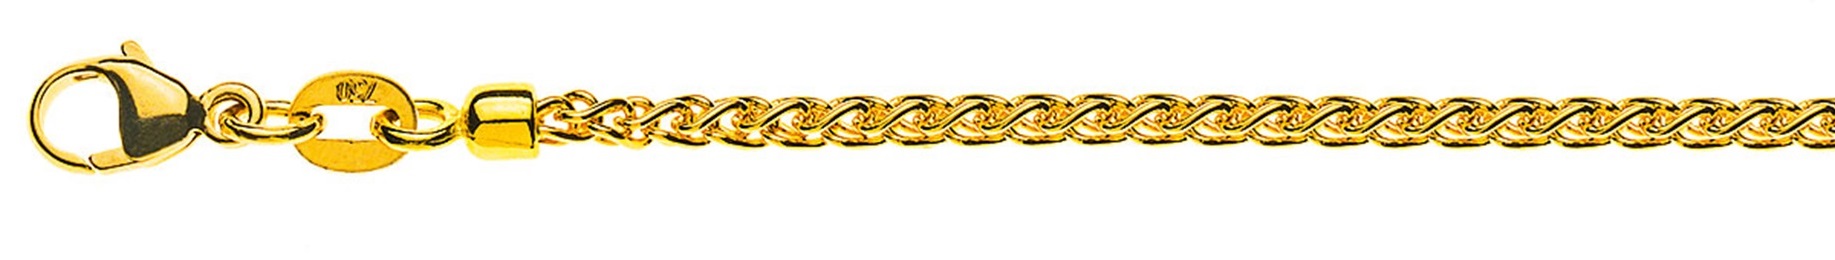 AURONOS Prestige Halskette Gelbgold 18K Zopfkette 60cm 2.15mm